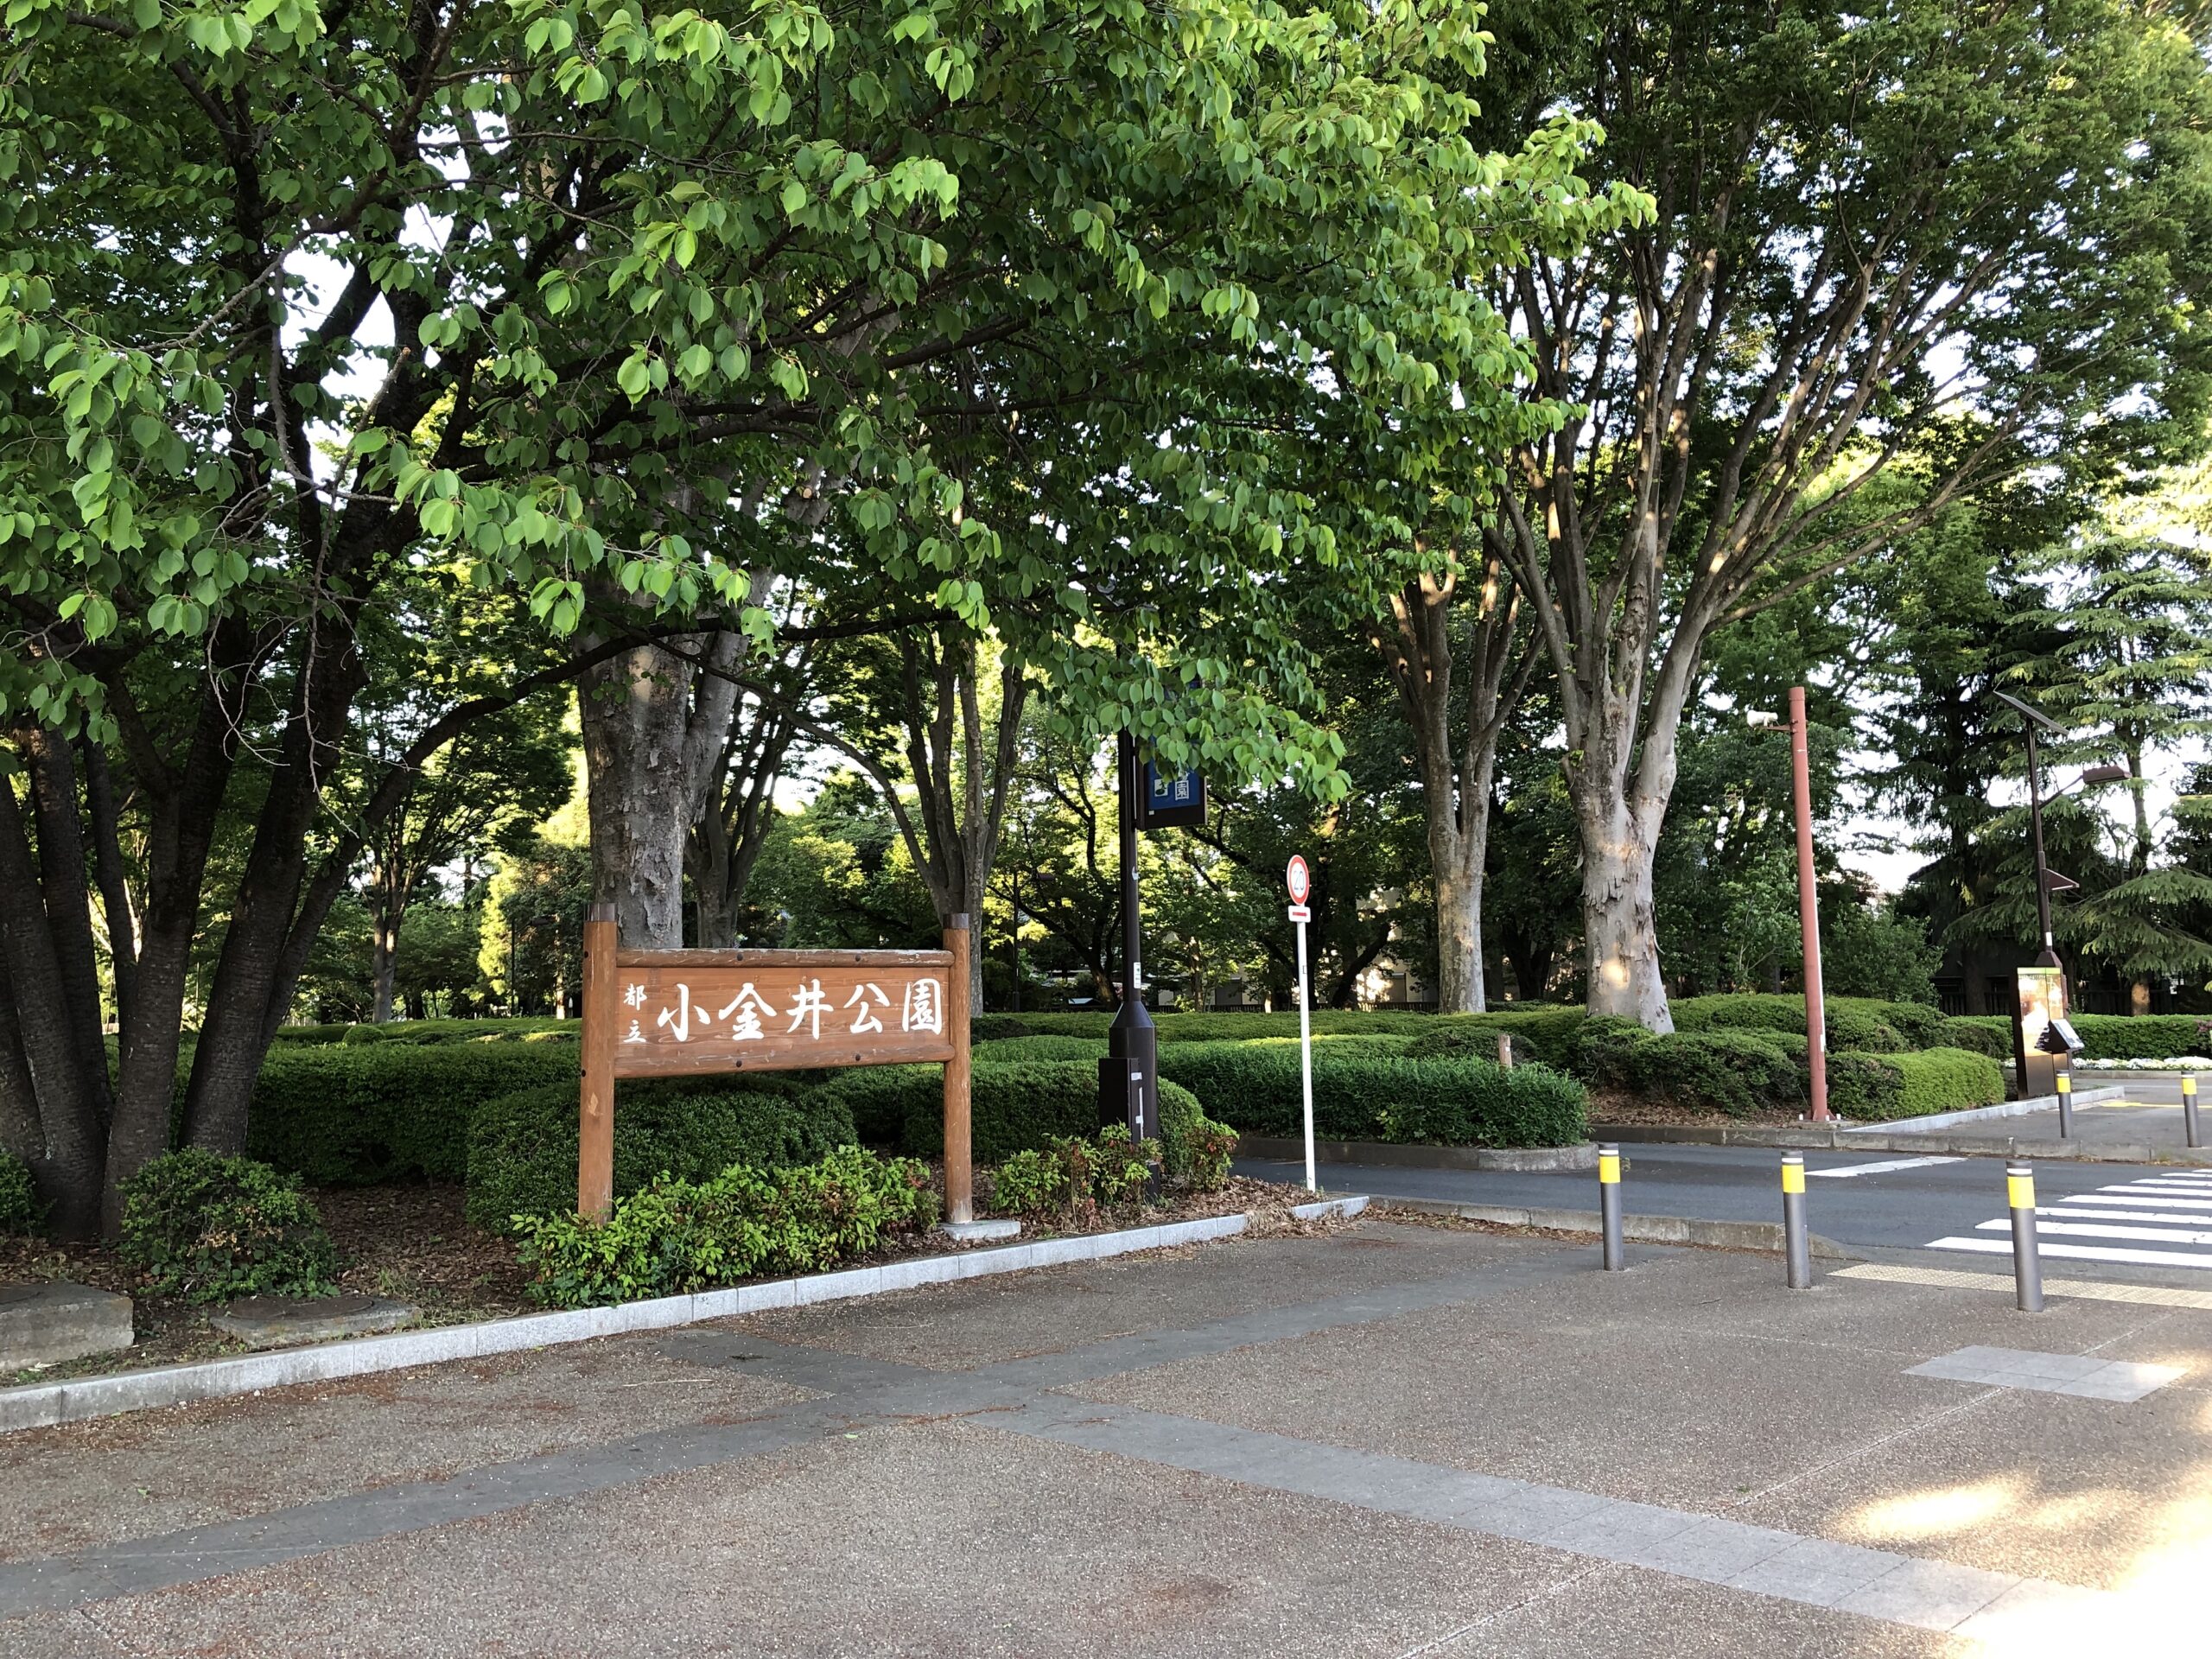 都立小金井公園入口の写真です